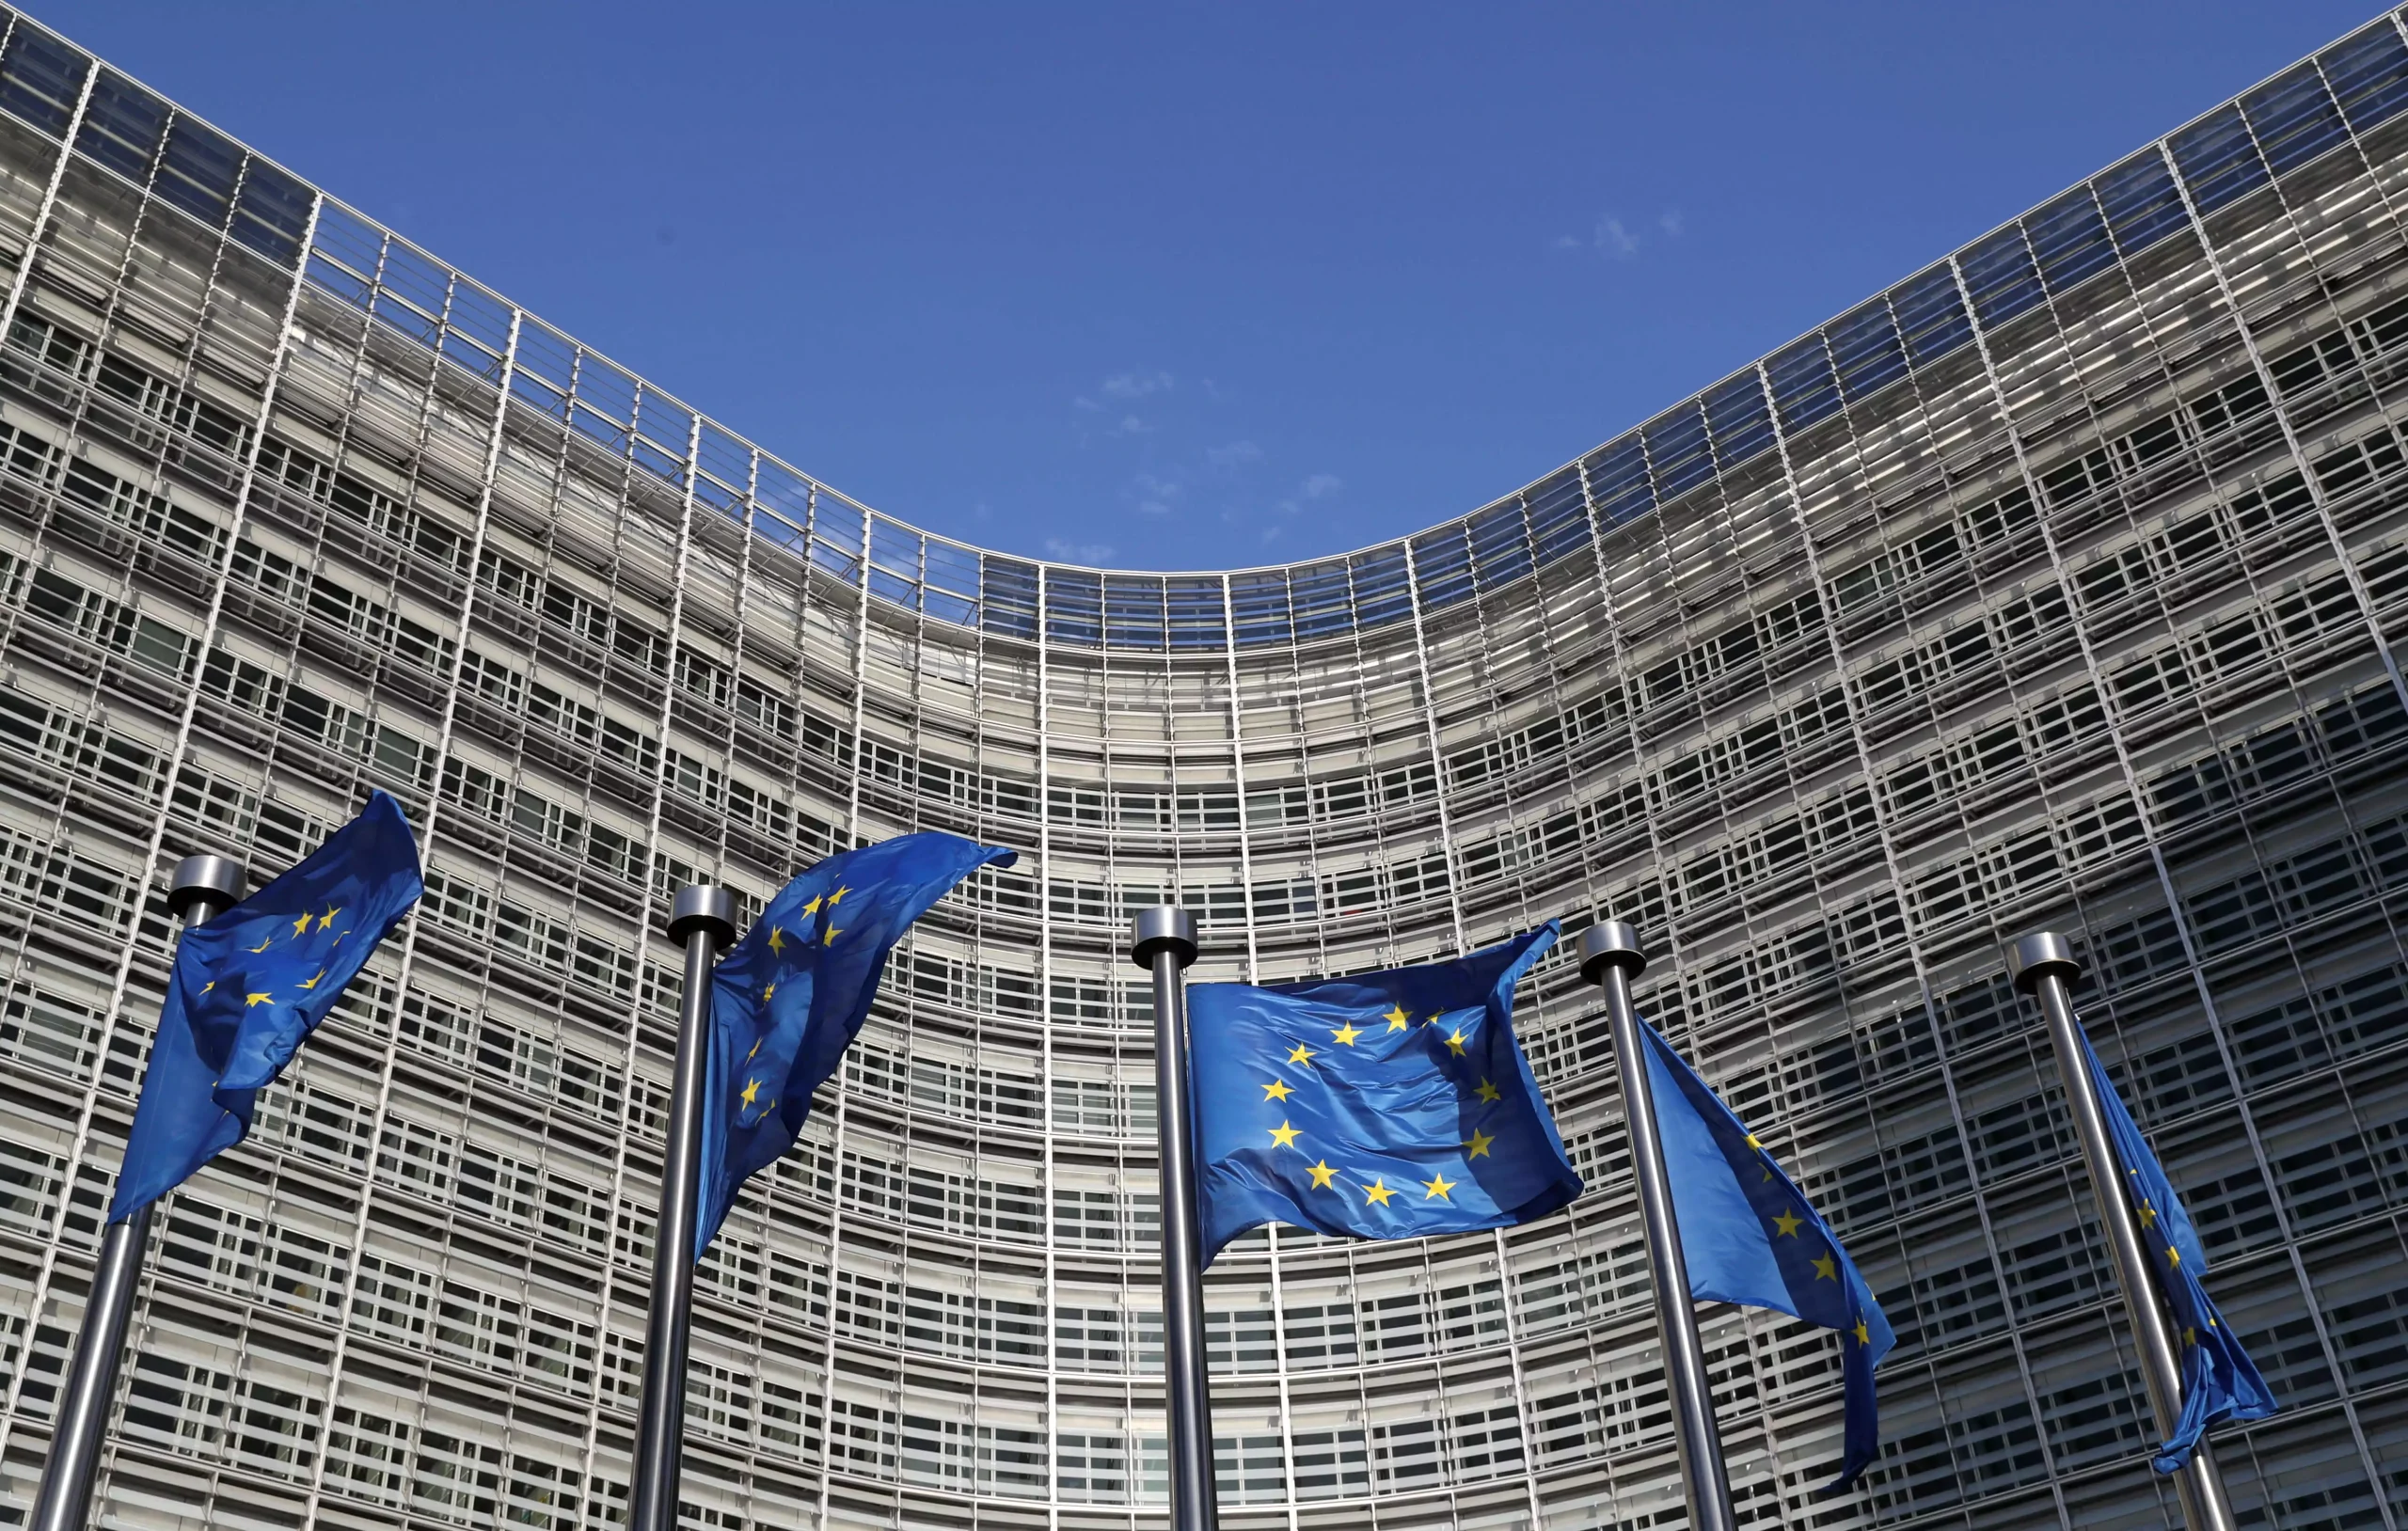 Ευρωπαϊκή Ένωση: 500 δισ. ευρώ δεν έχουν διατεθεί από το Ταμείο Ανάκαμψης μετά την πανδημία